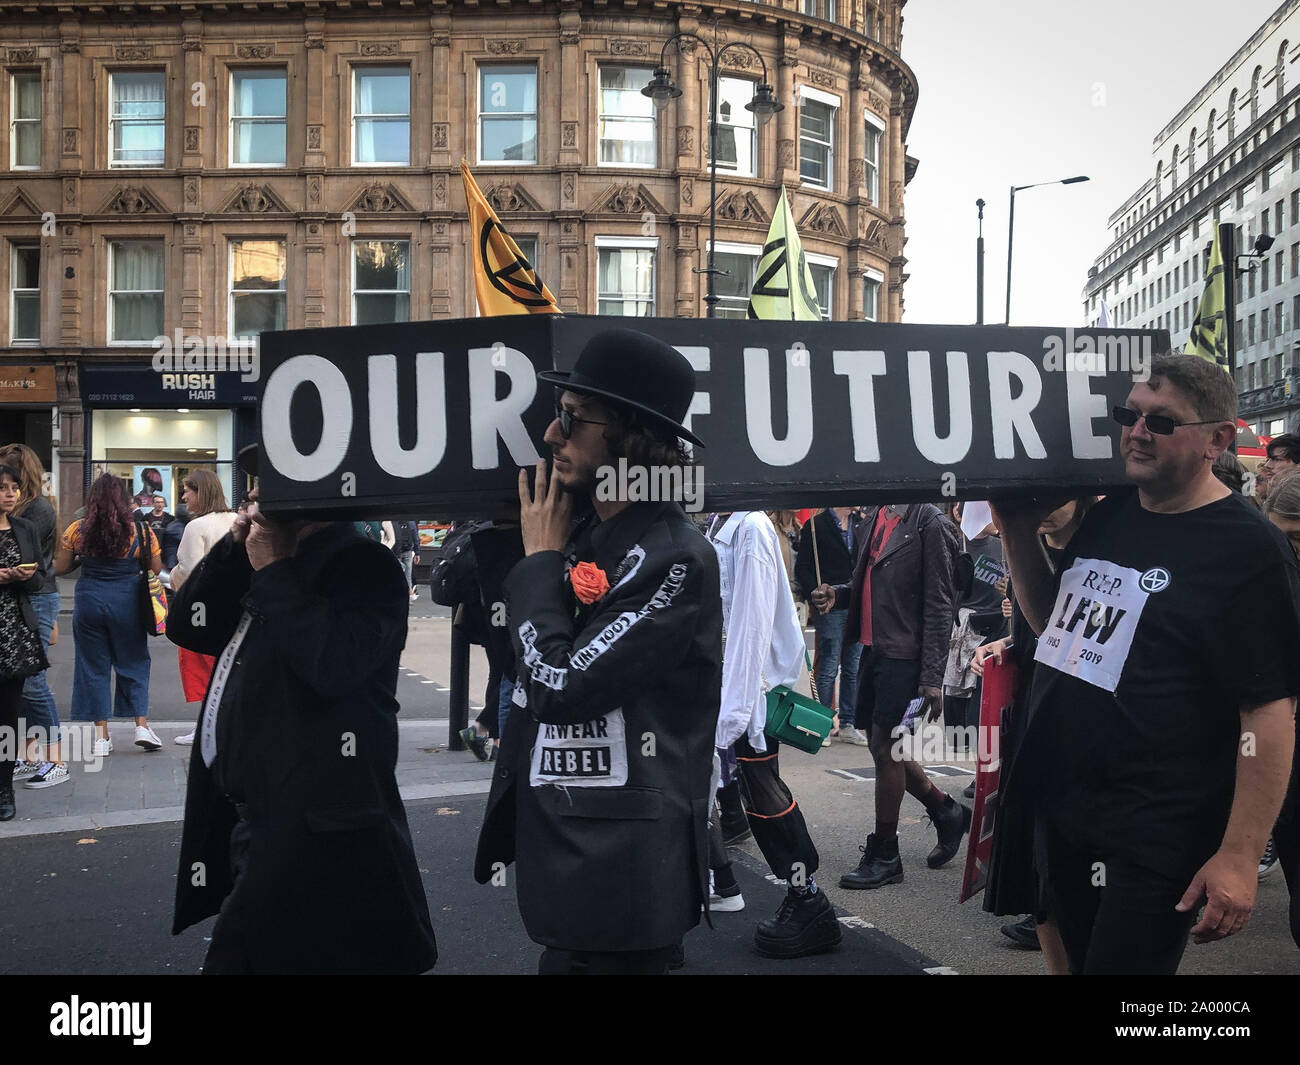 Groupe d'activiste rébellion d'extinction ont organisé une procession funéraire à Londres, le mardi, pour protester contre la Semaine de la mode de Londres. Les porteurs de cercueils noirs réalisée avec le slogan : "Notre avenir", tandis que des banderoles réalisées par des manifestants lire "La vie ou la mort' et 'R.I.P. LFW.' l'extinction La rébellion est un mouvement socio-politique avec l'objectif de l'utilisation de la désobéissance civile et de résistance non violente pour contraindre le gouvernement à agir face aux changements climatiques, dégradation de la biodiversité, et le risque d'effondrement écologique et social. (Photo par Laura Chiesa/Pacific Press) Banque D'Images